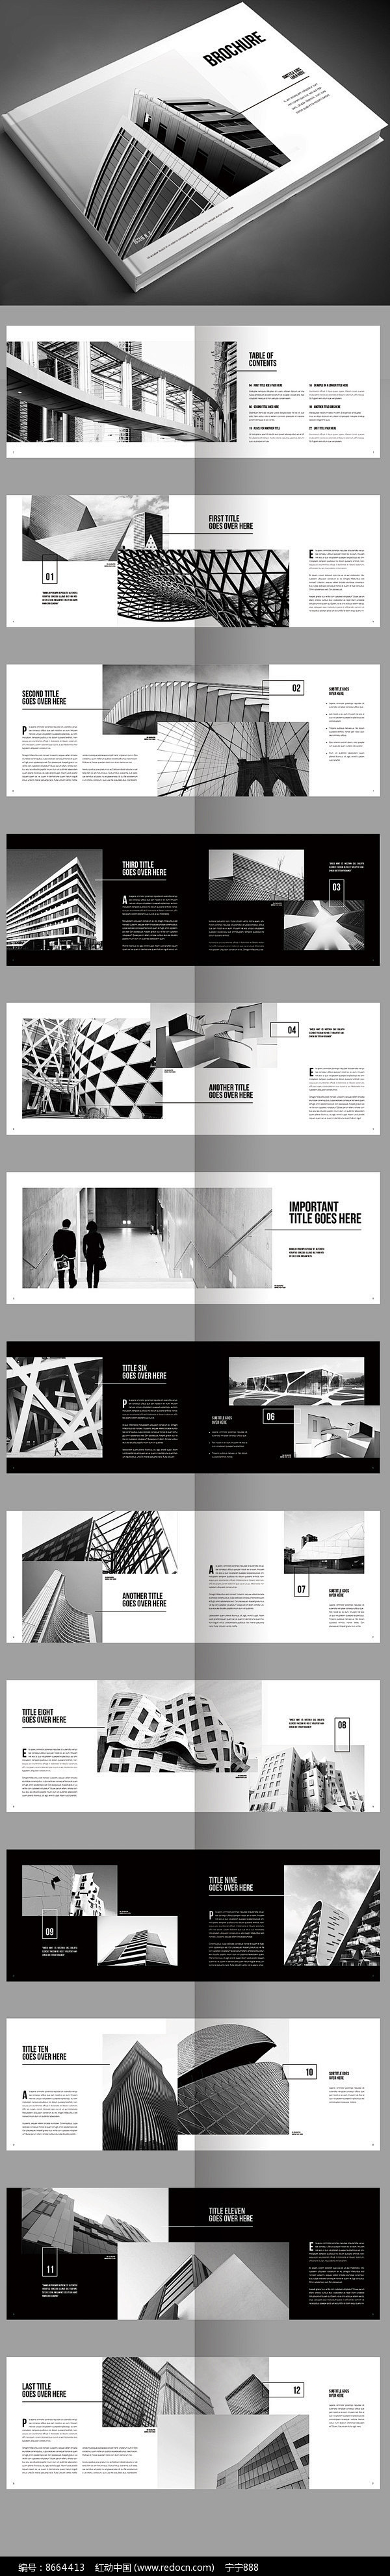 毕业设计建筑摄影作品集画册图片